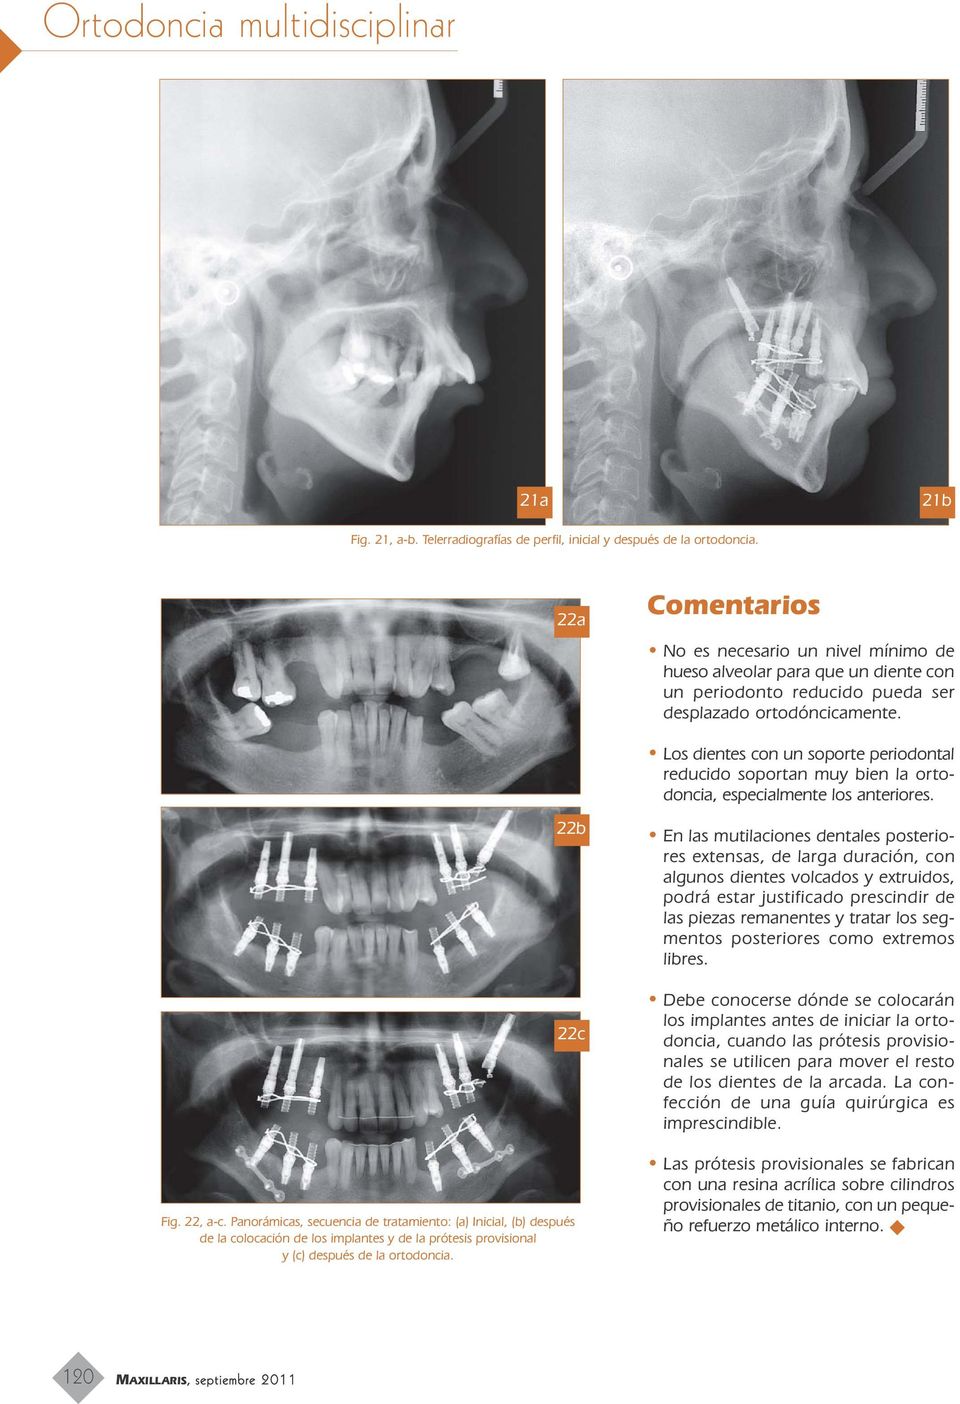 Los dientes con un soporte periodontal reducido soportan muy bien la ortodoncia, especialmente los anteriores. Fig. 22, a-c.